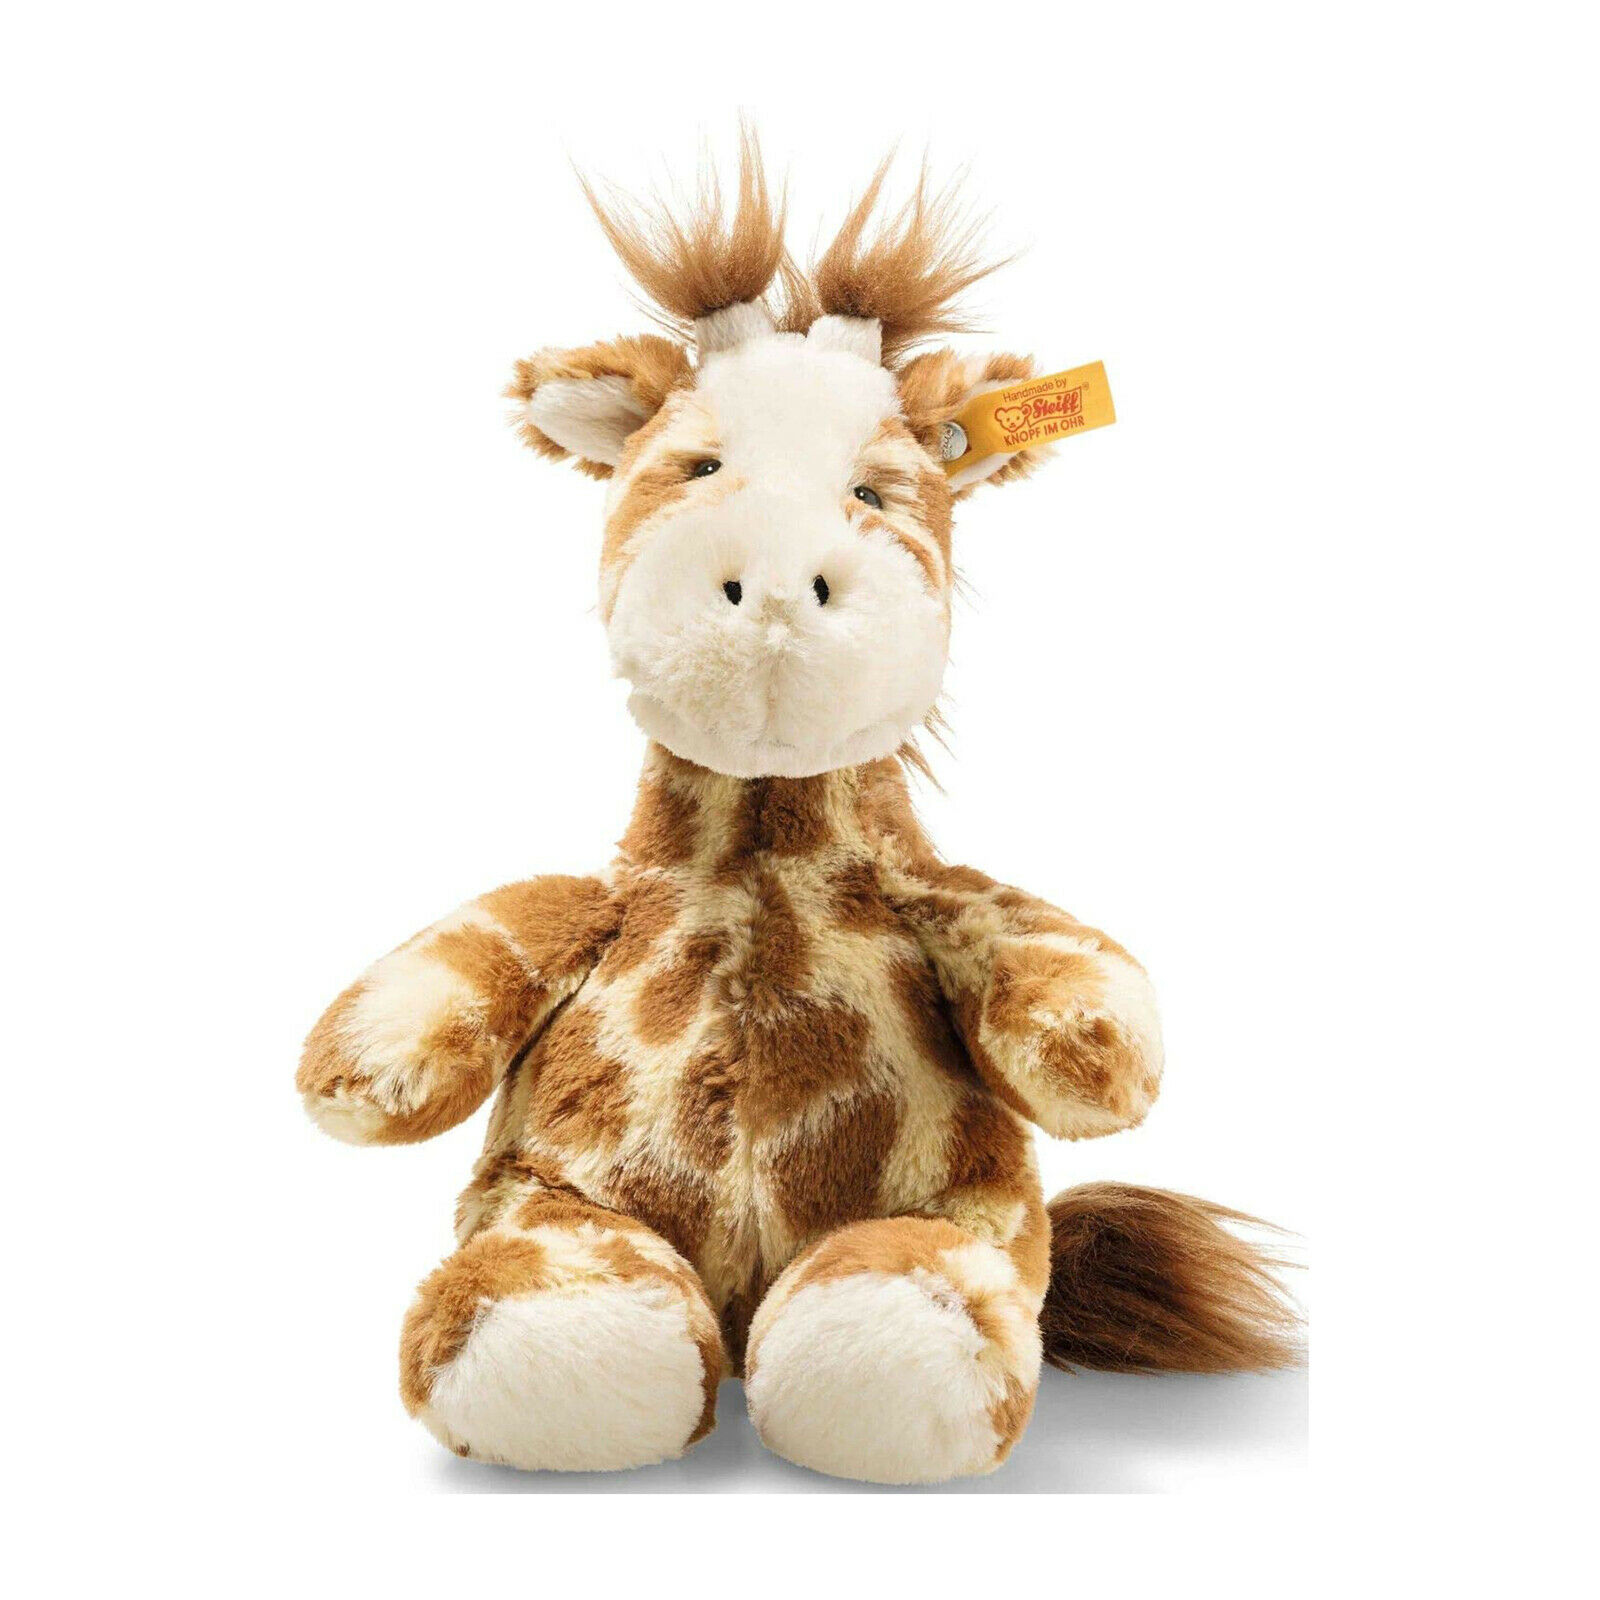 Steiff Girta Giraffe Plush Figure NEW IN STOCK